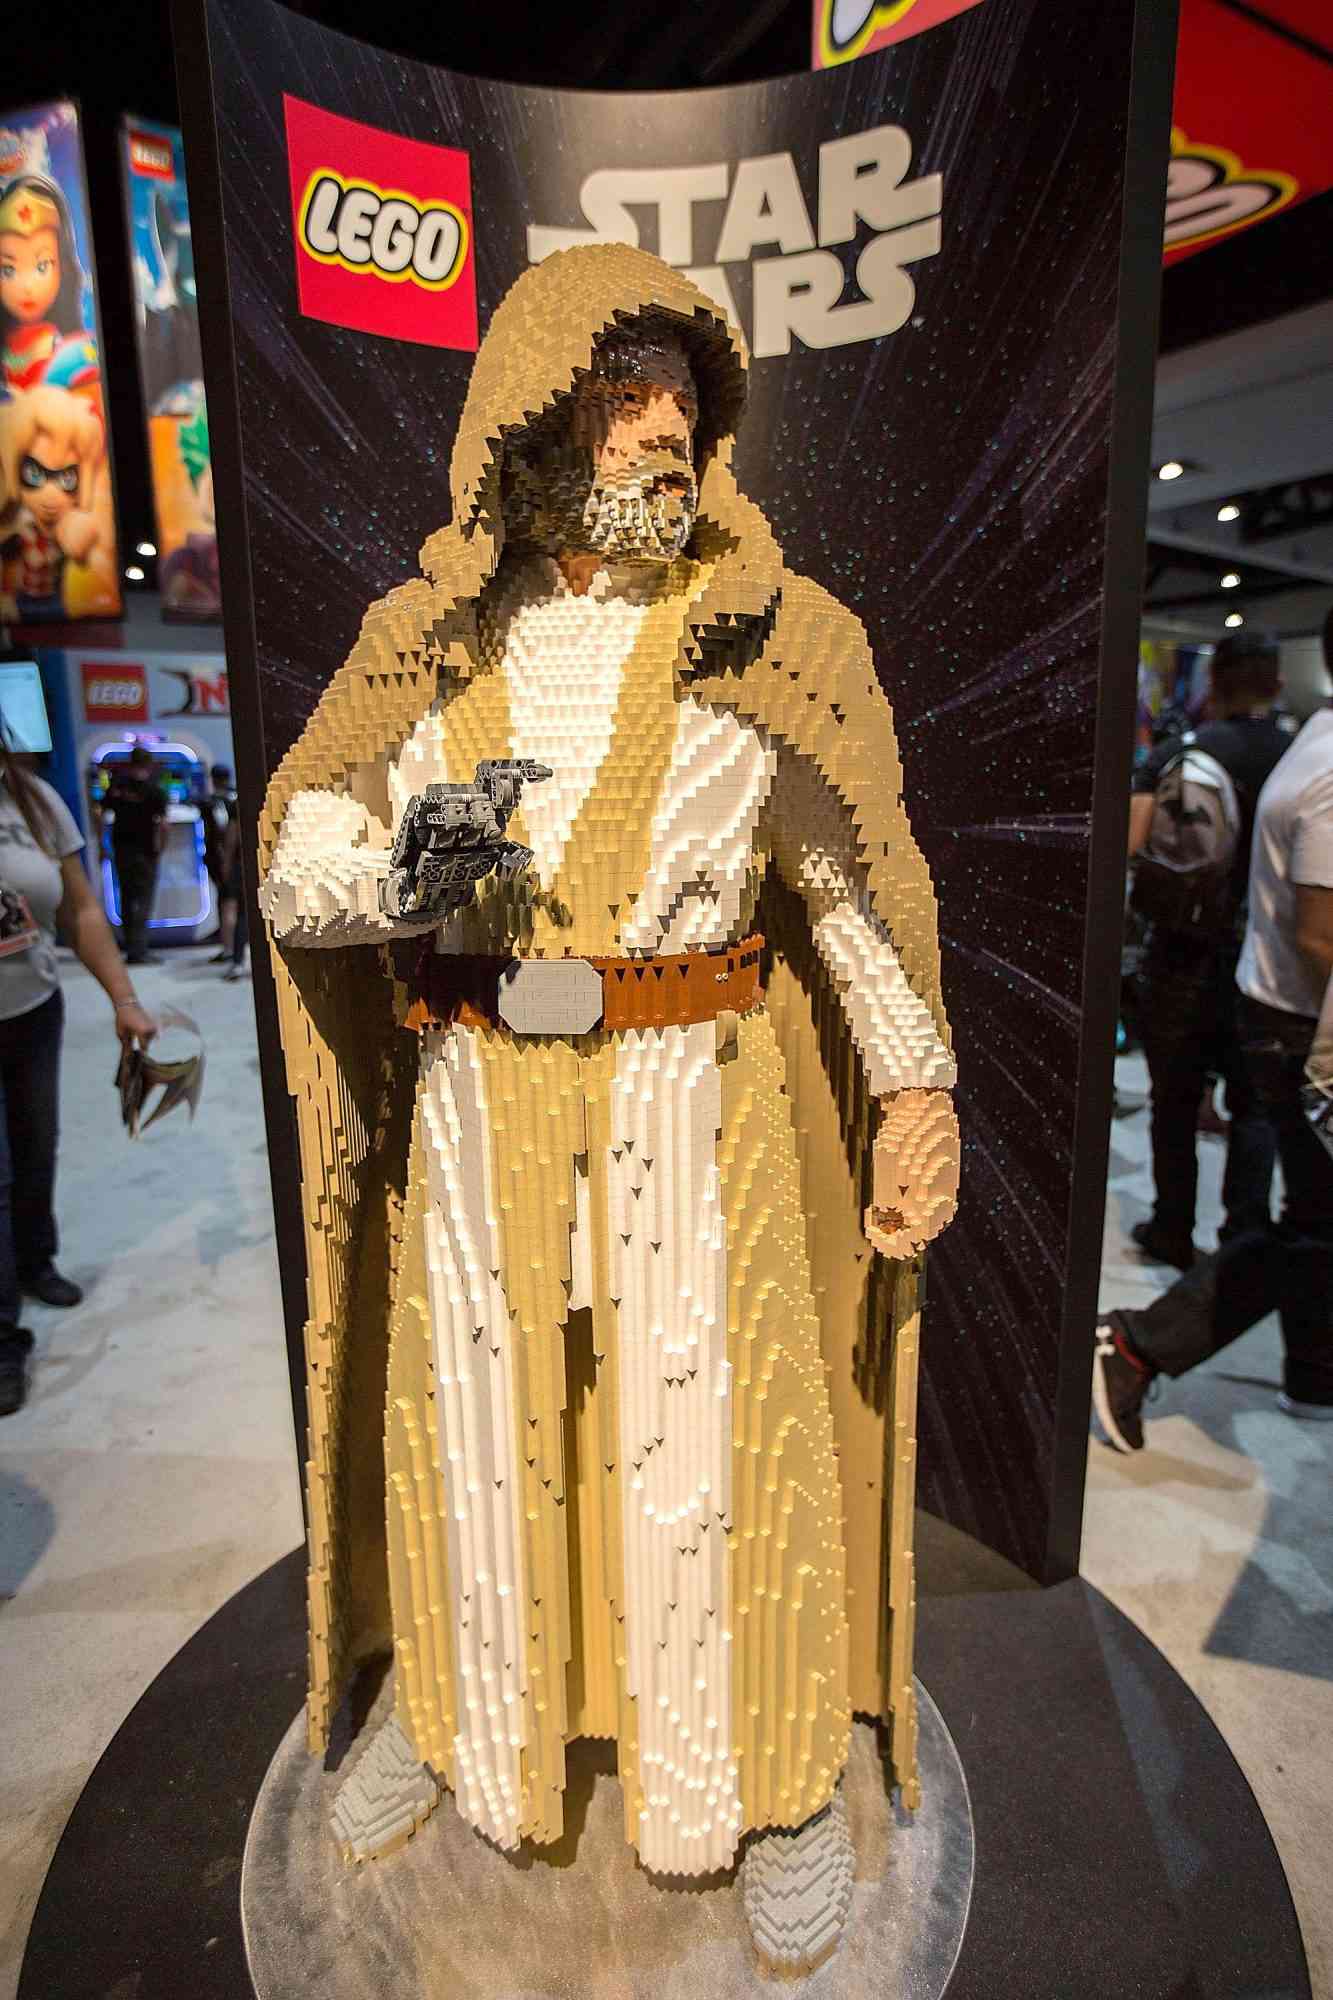 A LEGO Statue of Luke Skywalker&nbsp;